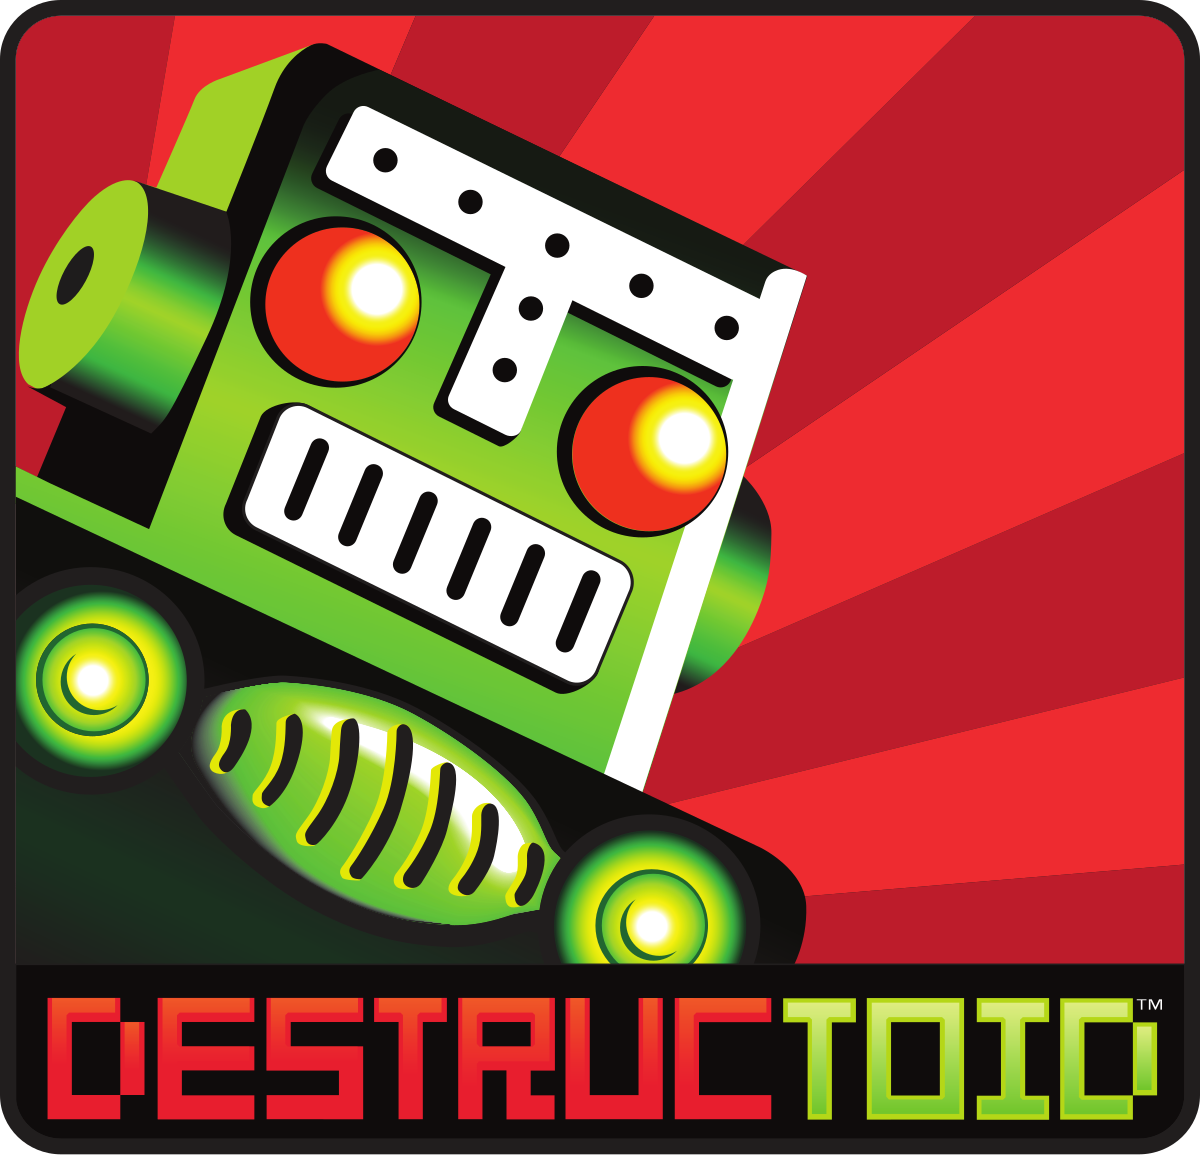 Mr destructoid